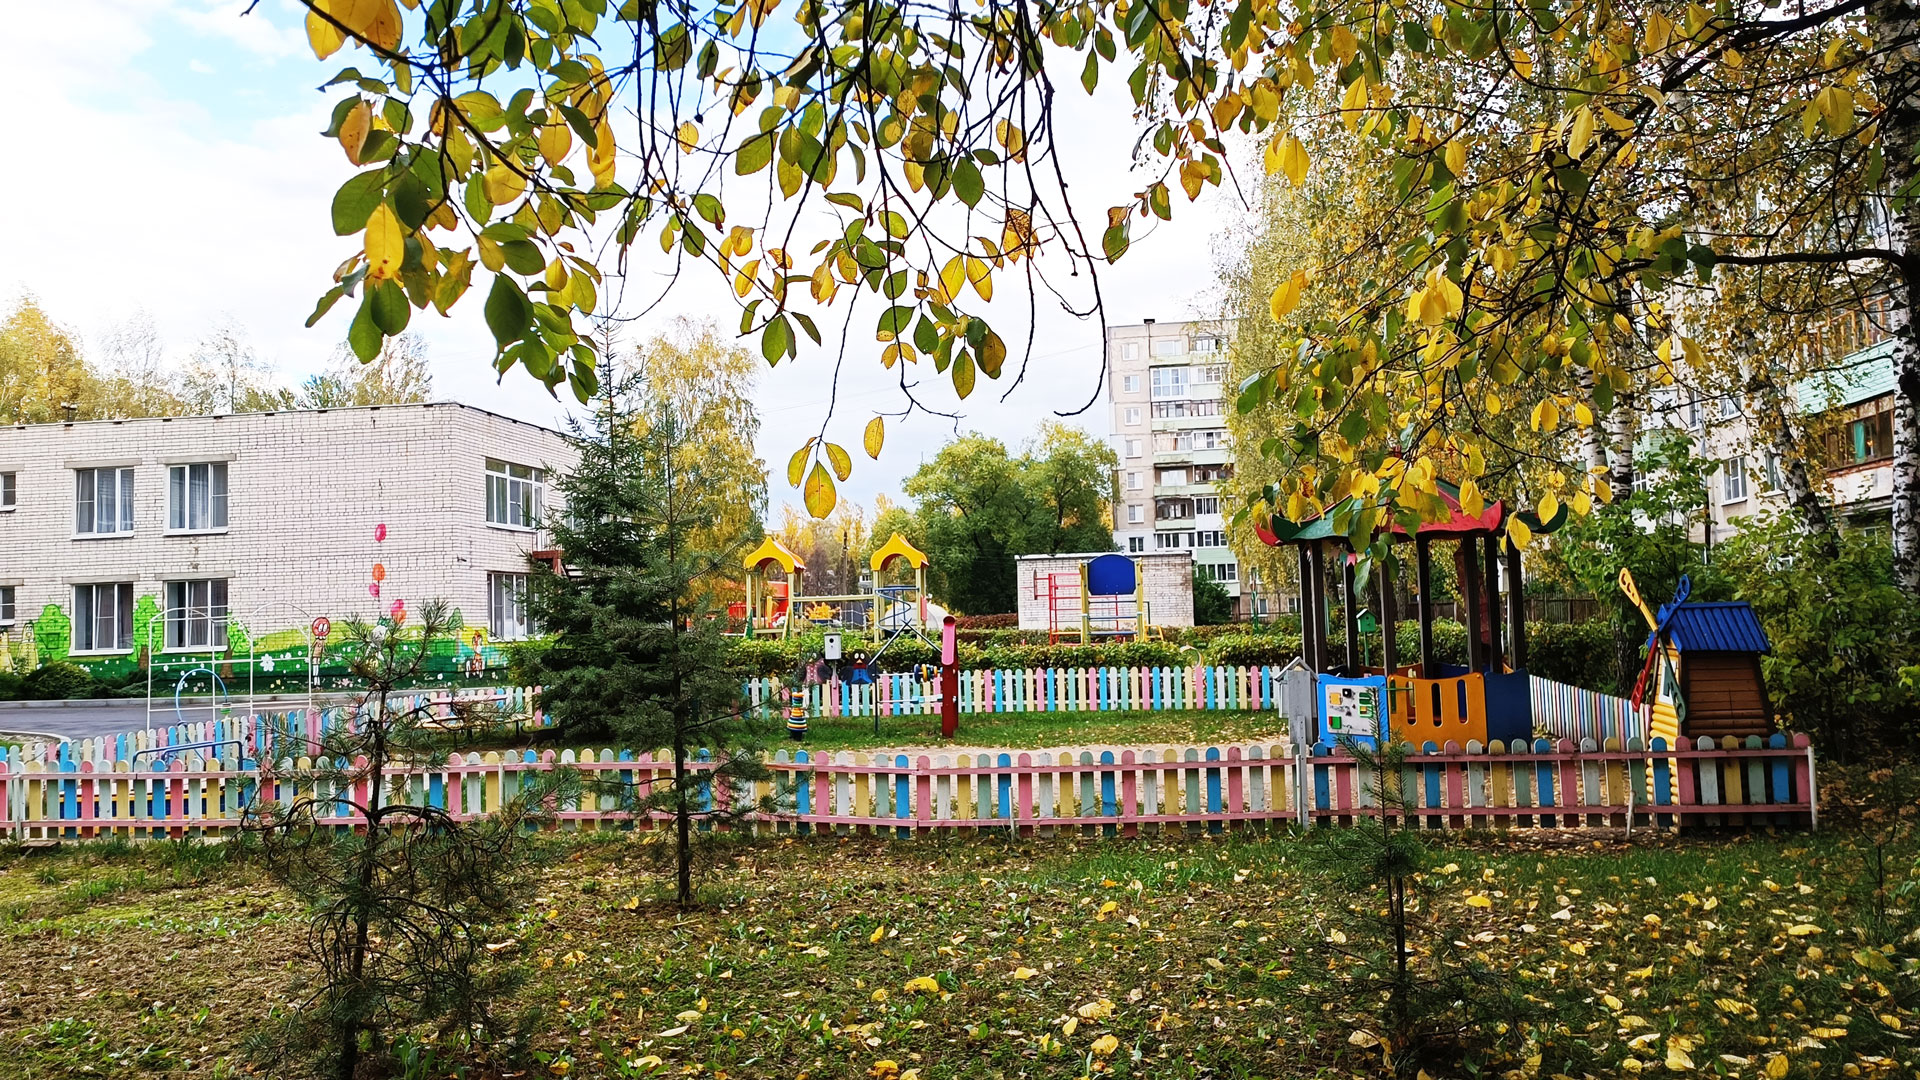 Детский сад 93 Ярославль по ул. Архангельский проезд, 5а: панорамный вид д/с.